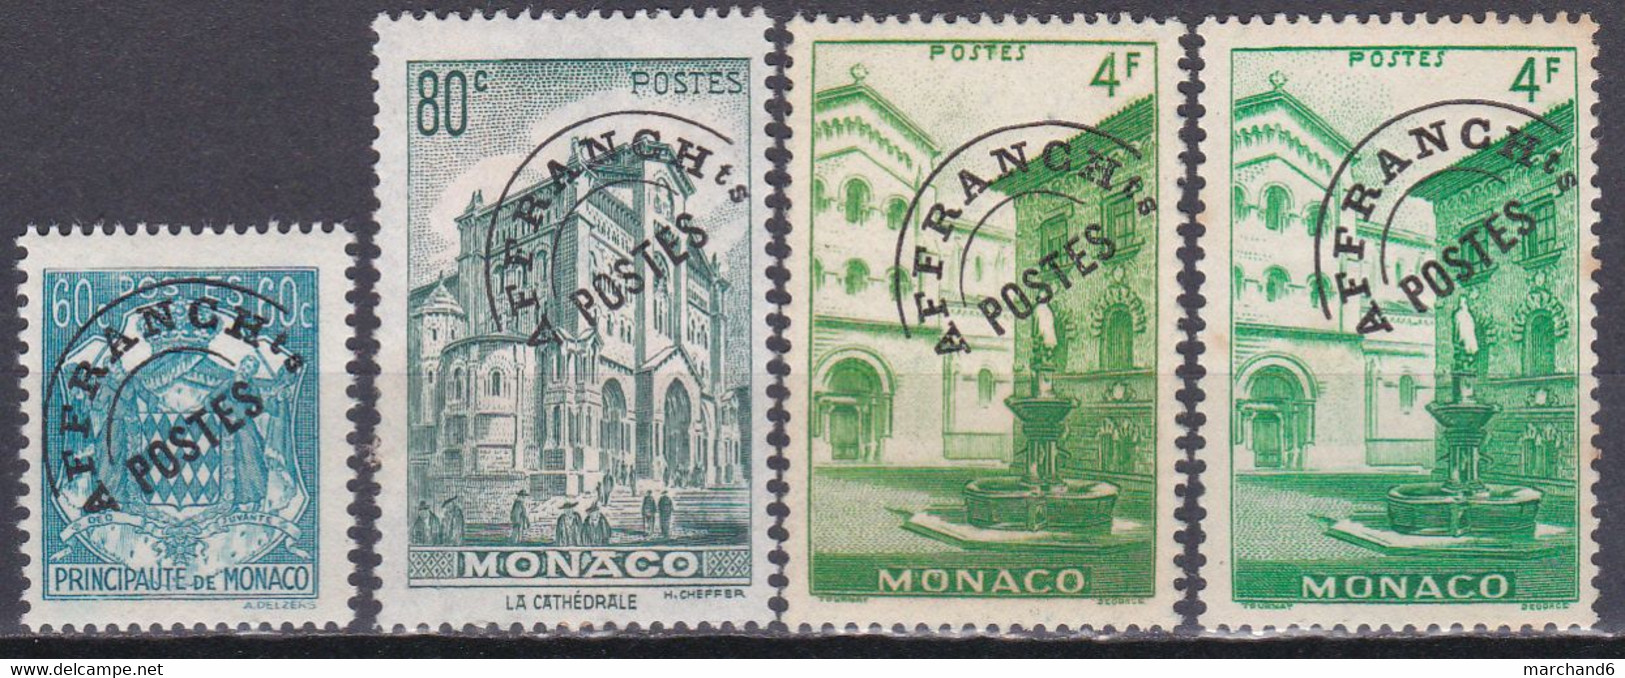 Monaco Timbres Poste Suchargés 1943-51 Préoblitérés N°1-2-3-3a Neuf*charnière - Precancels